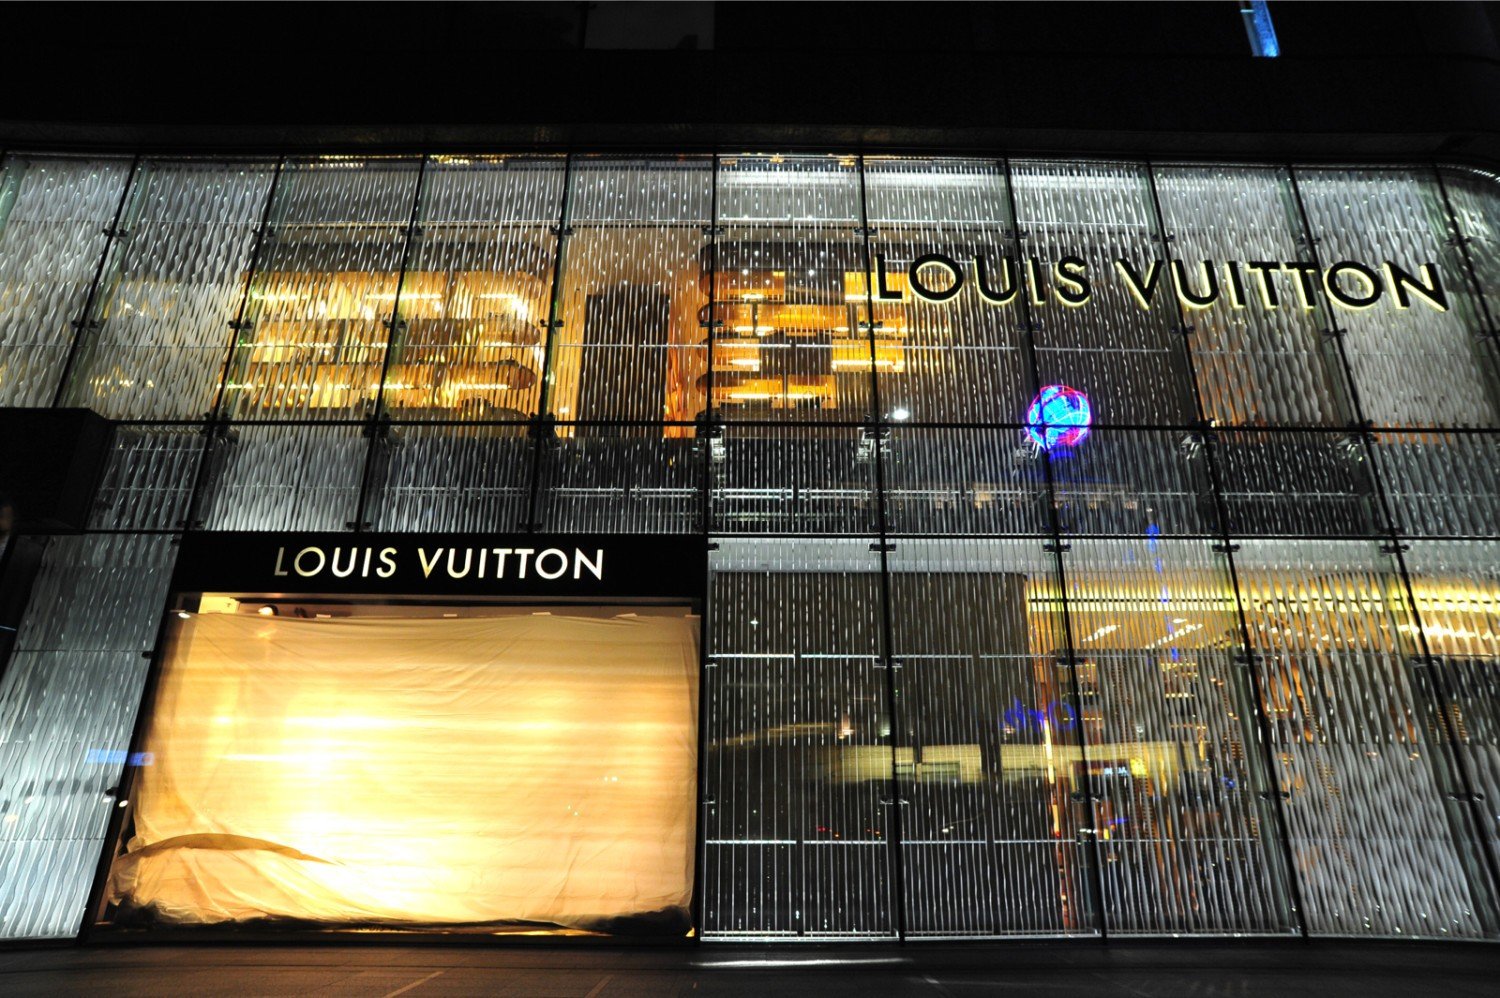 Louis Vuitton otwiera sklep w Warszawie - Wydarzenia / W polsce